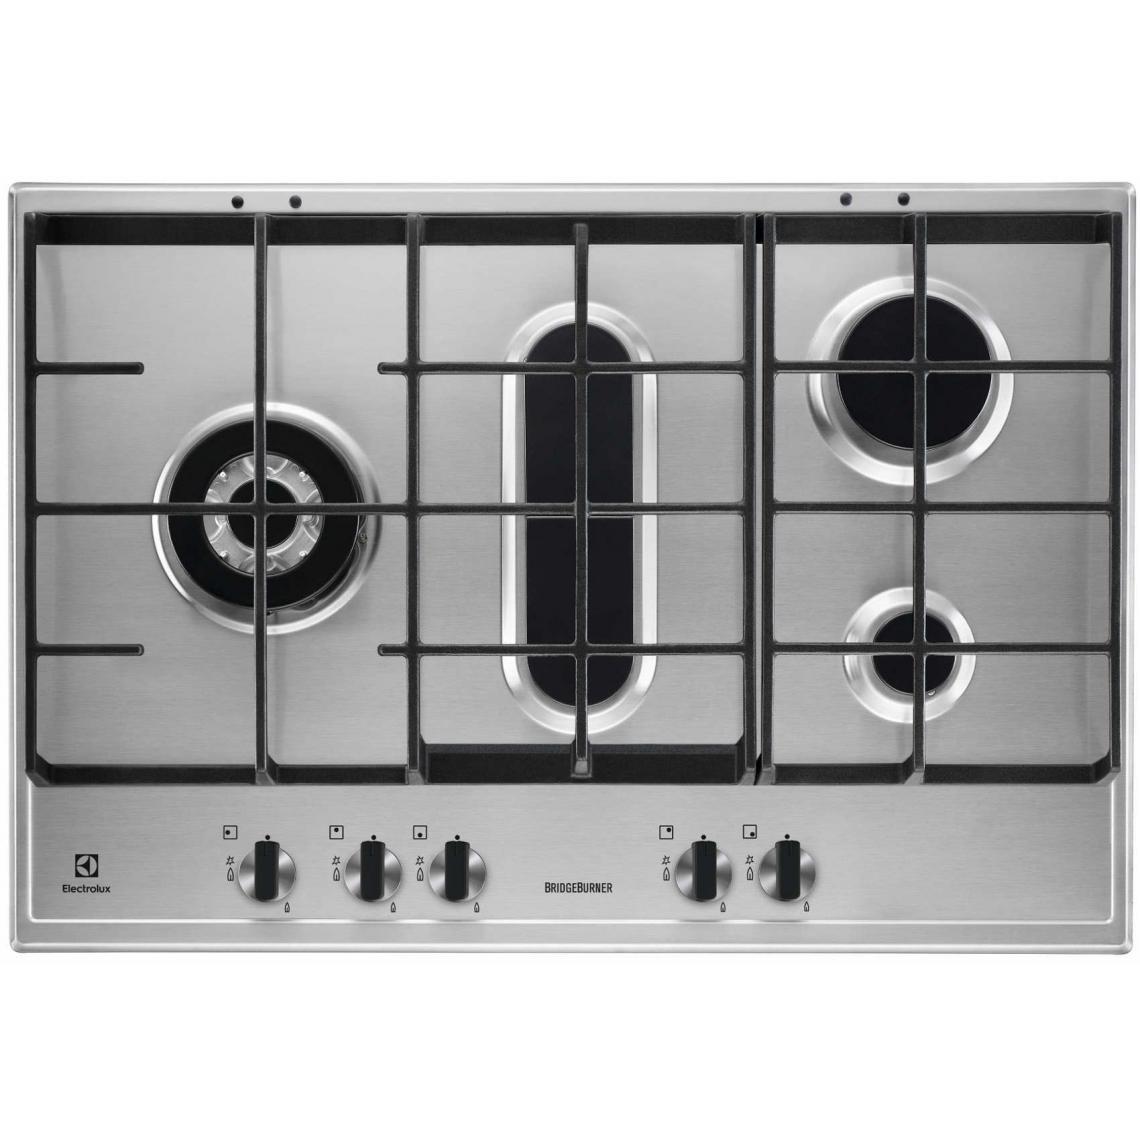 Electrolux - Plaque gaz ELECTROLUX 75cm, 1045070 - Table de cuisson